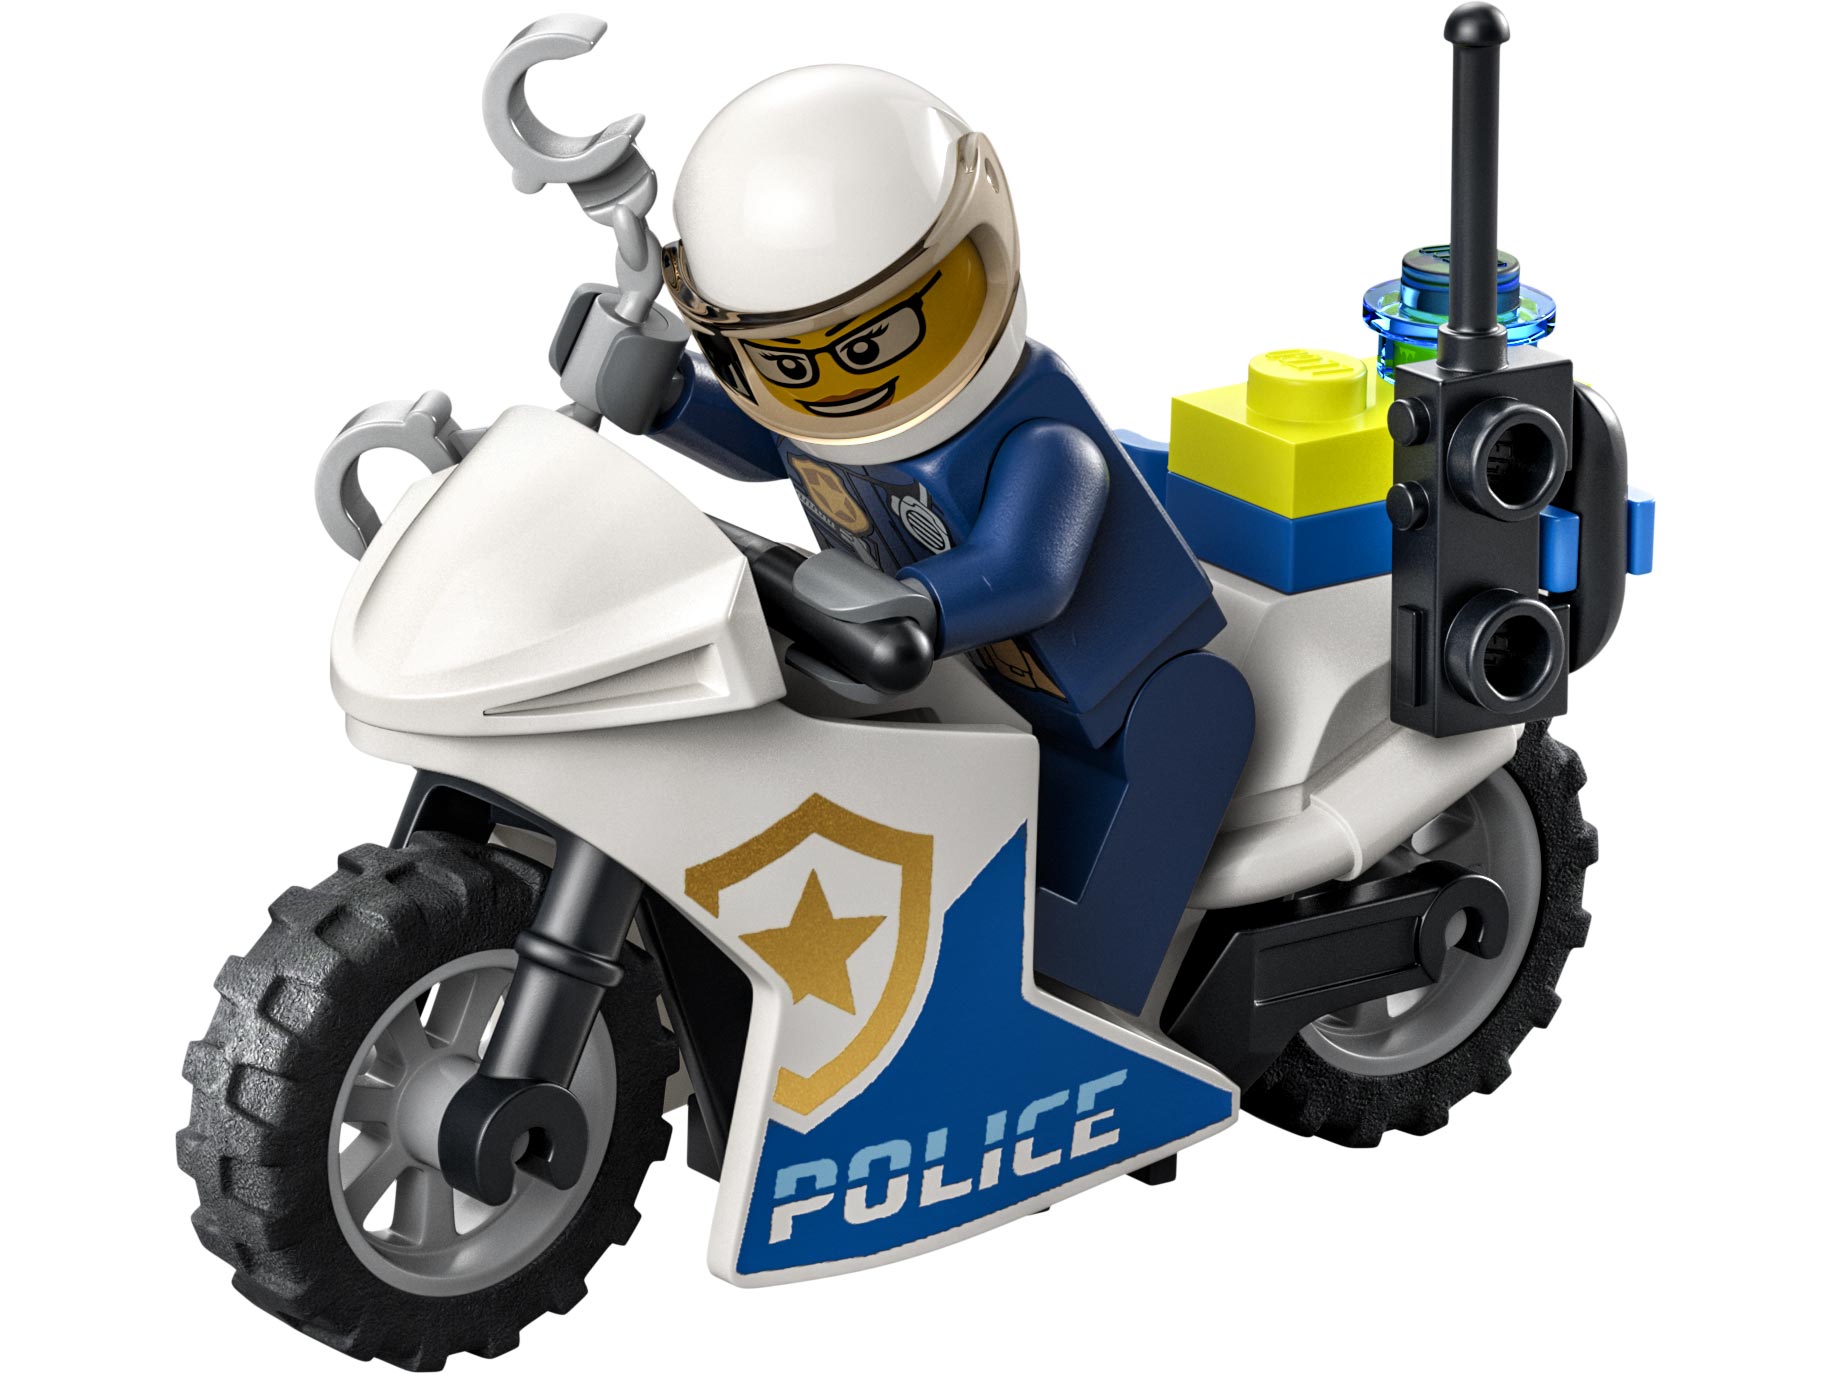 Конструктор LEGO City Fire Пожарная бригада и полицейская погоня 60319